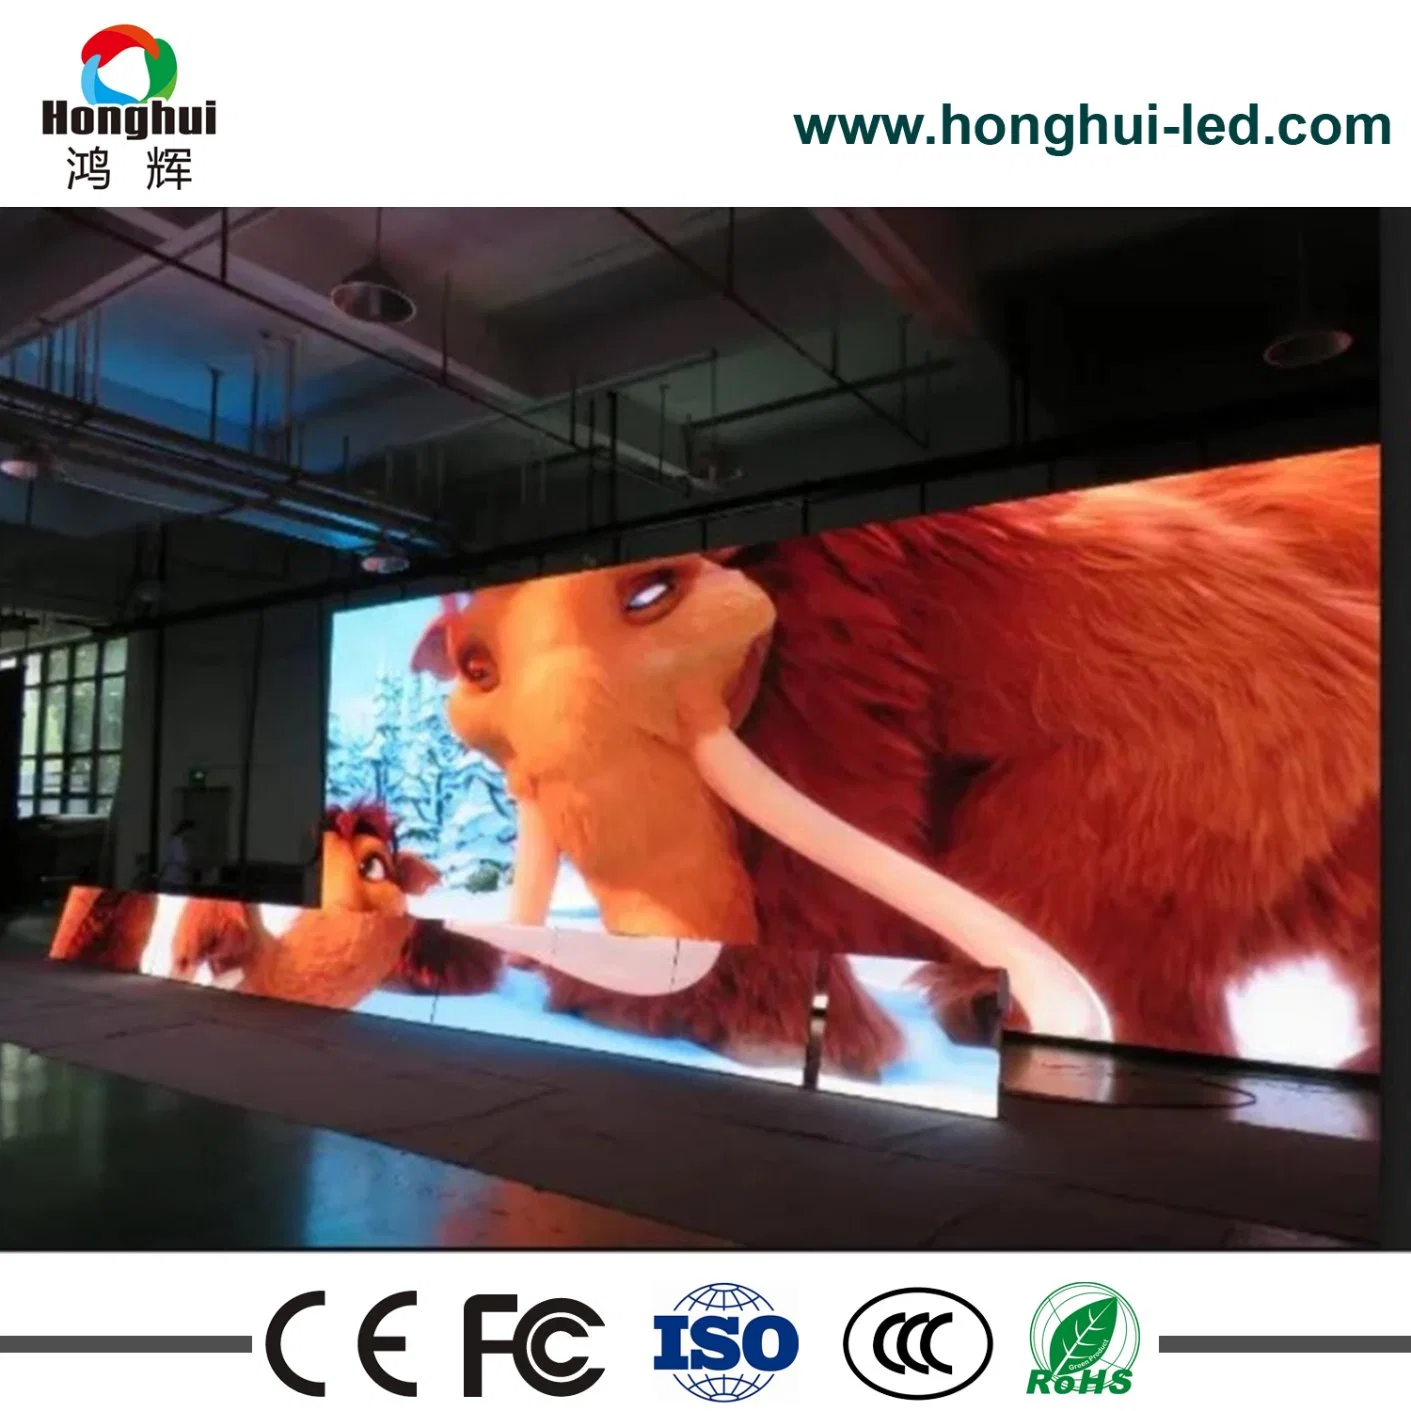 Panneau d'affichage LED extérieur Nation Star Full Color haute luminosité P3 P4 P5 P10 P8 P6 pour écran publicitaire